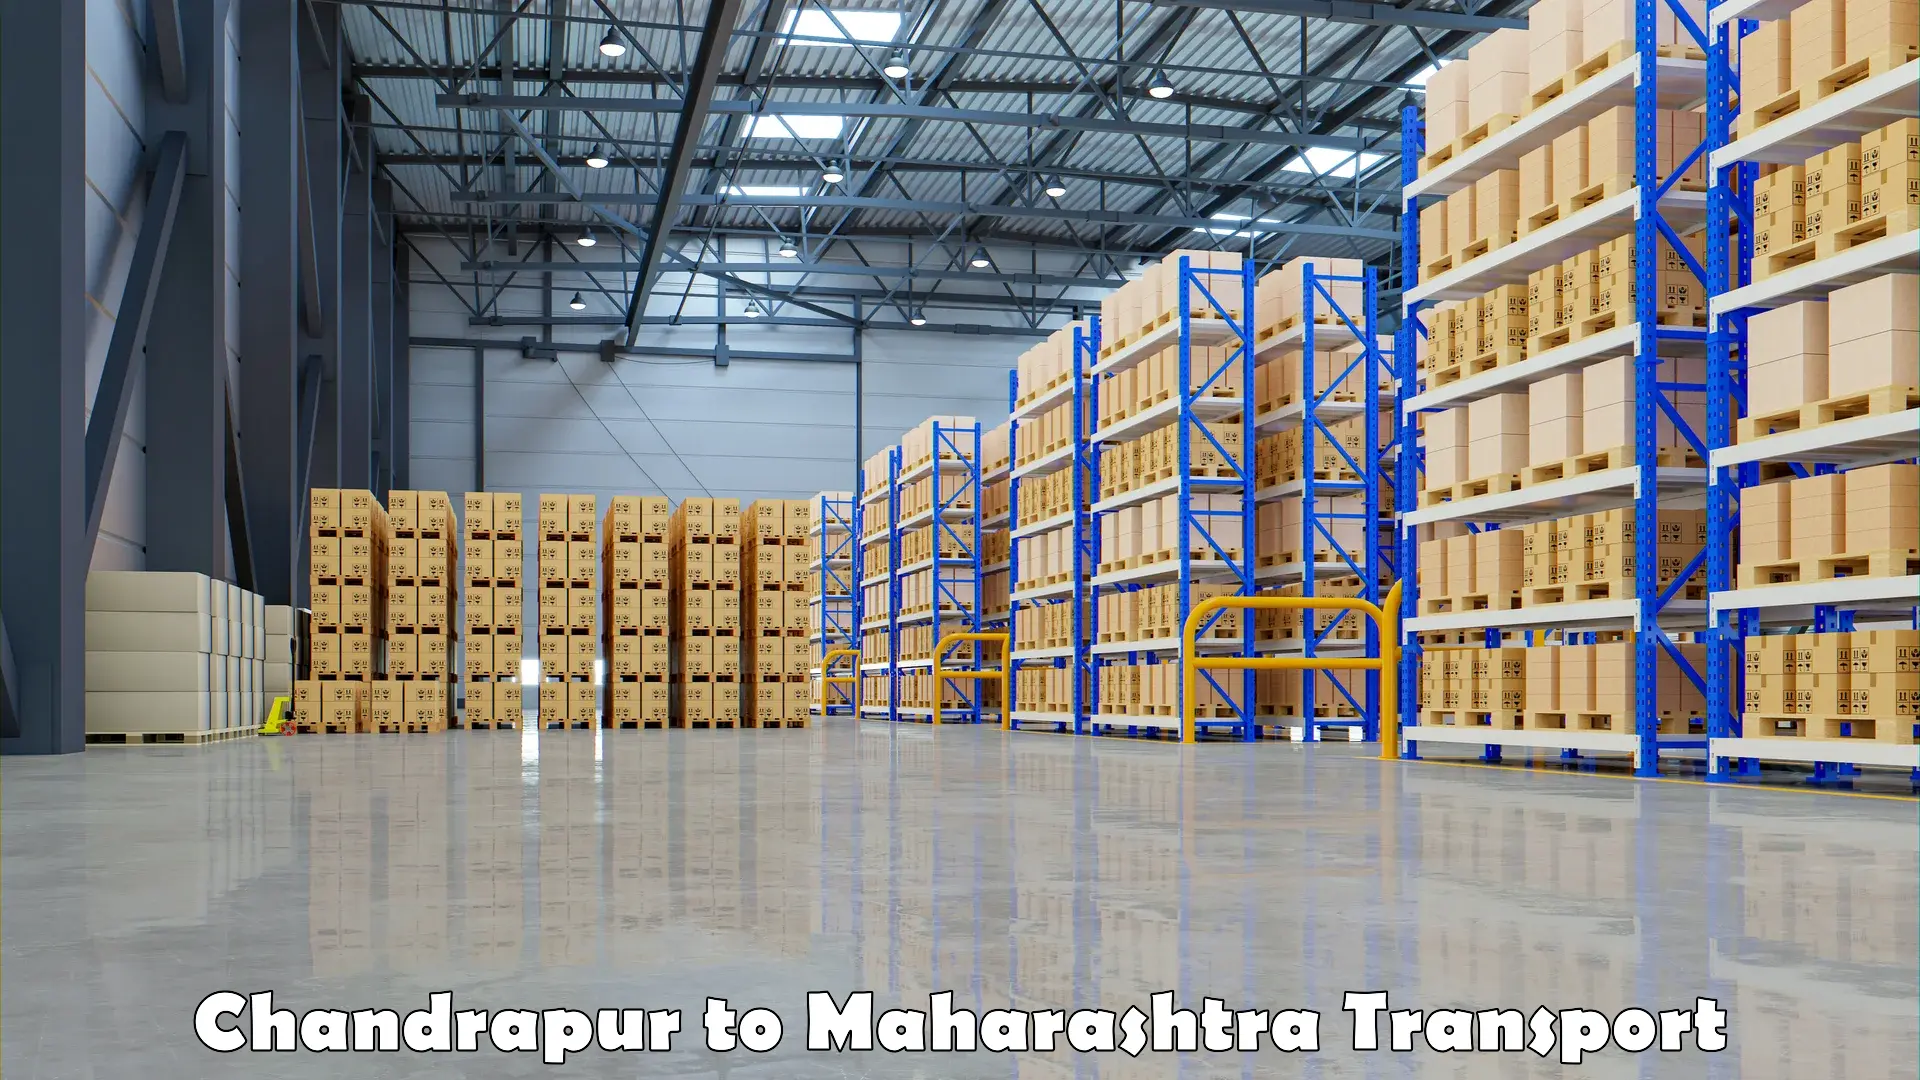 Express transport services Chandrapur to Maharashtra